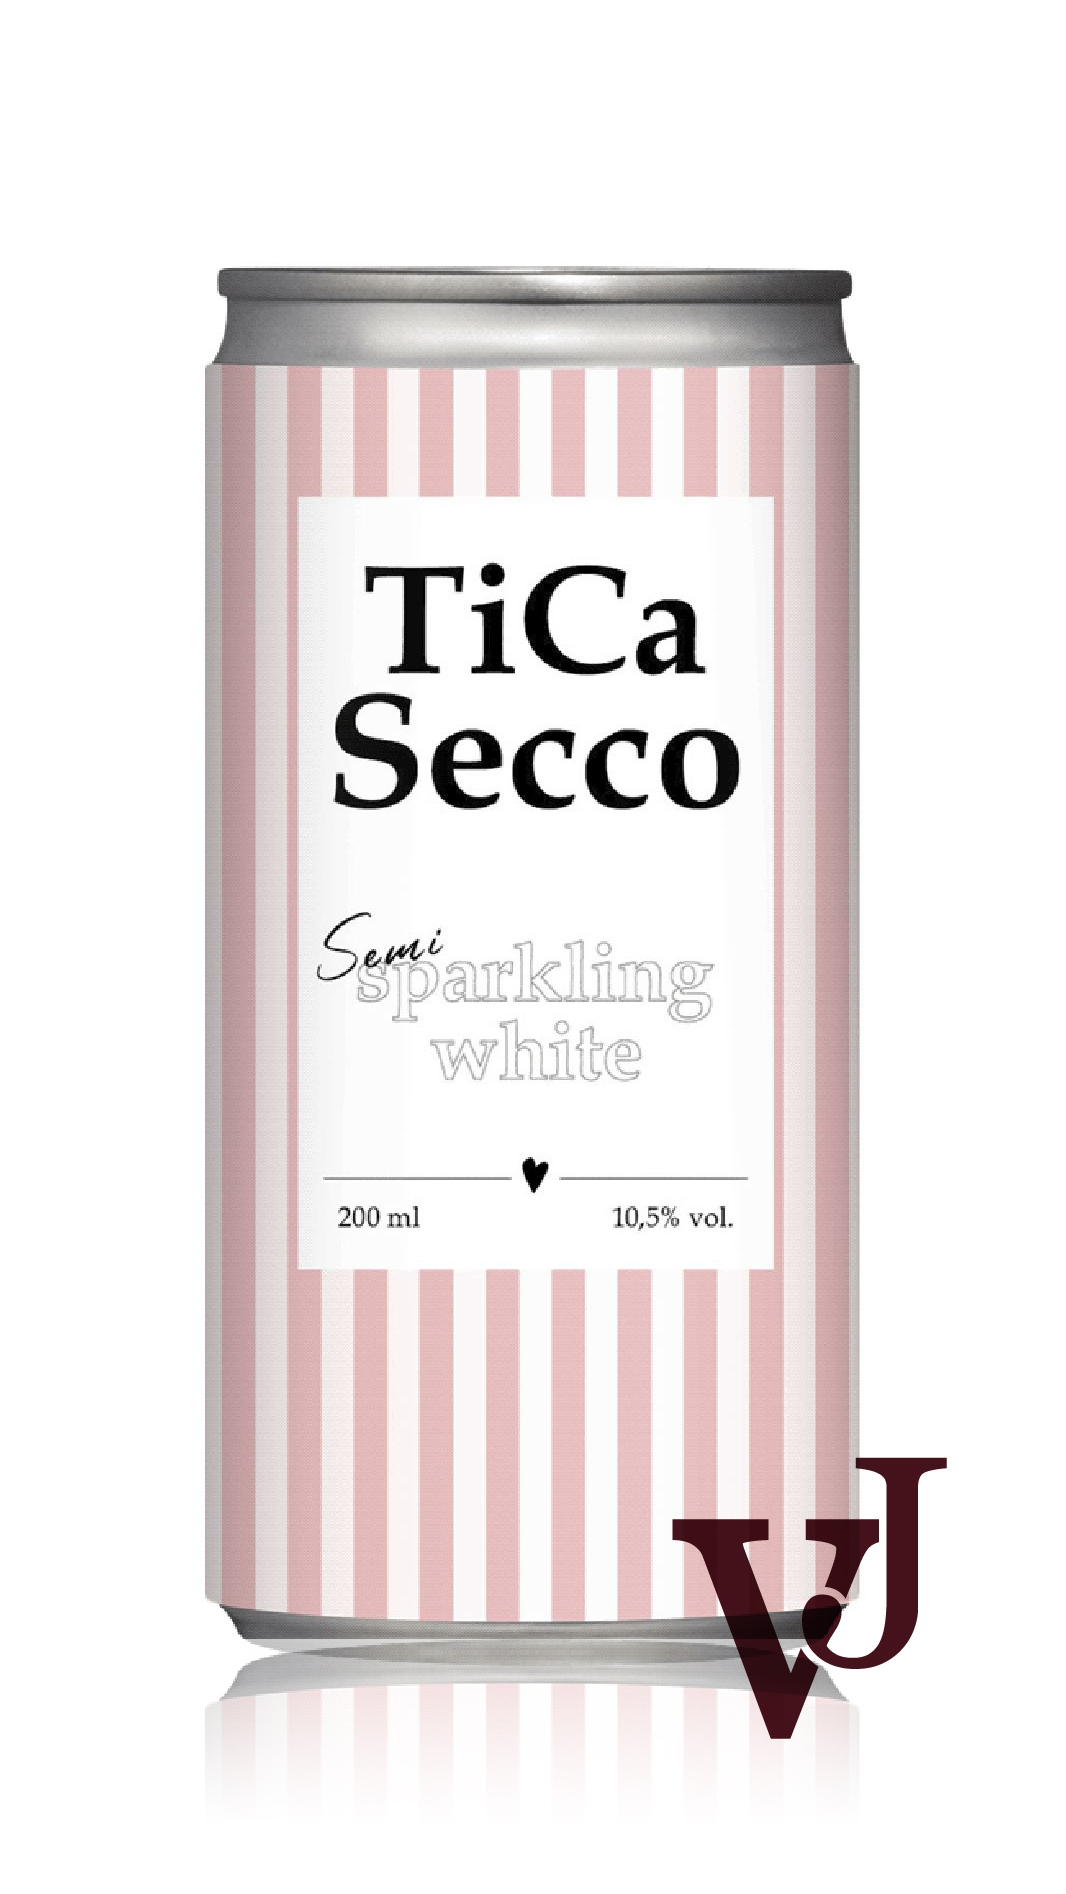 Vitt Vin - Tica Secco artikel nummer 7342814 från producenten Cantina Vigna Verde Srl från Italien